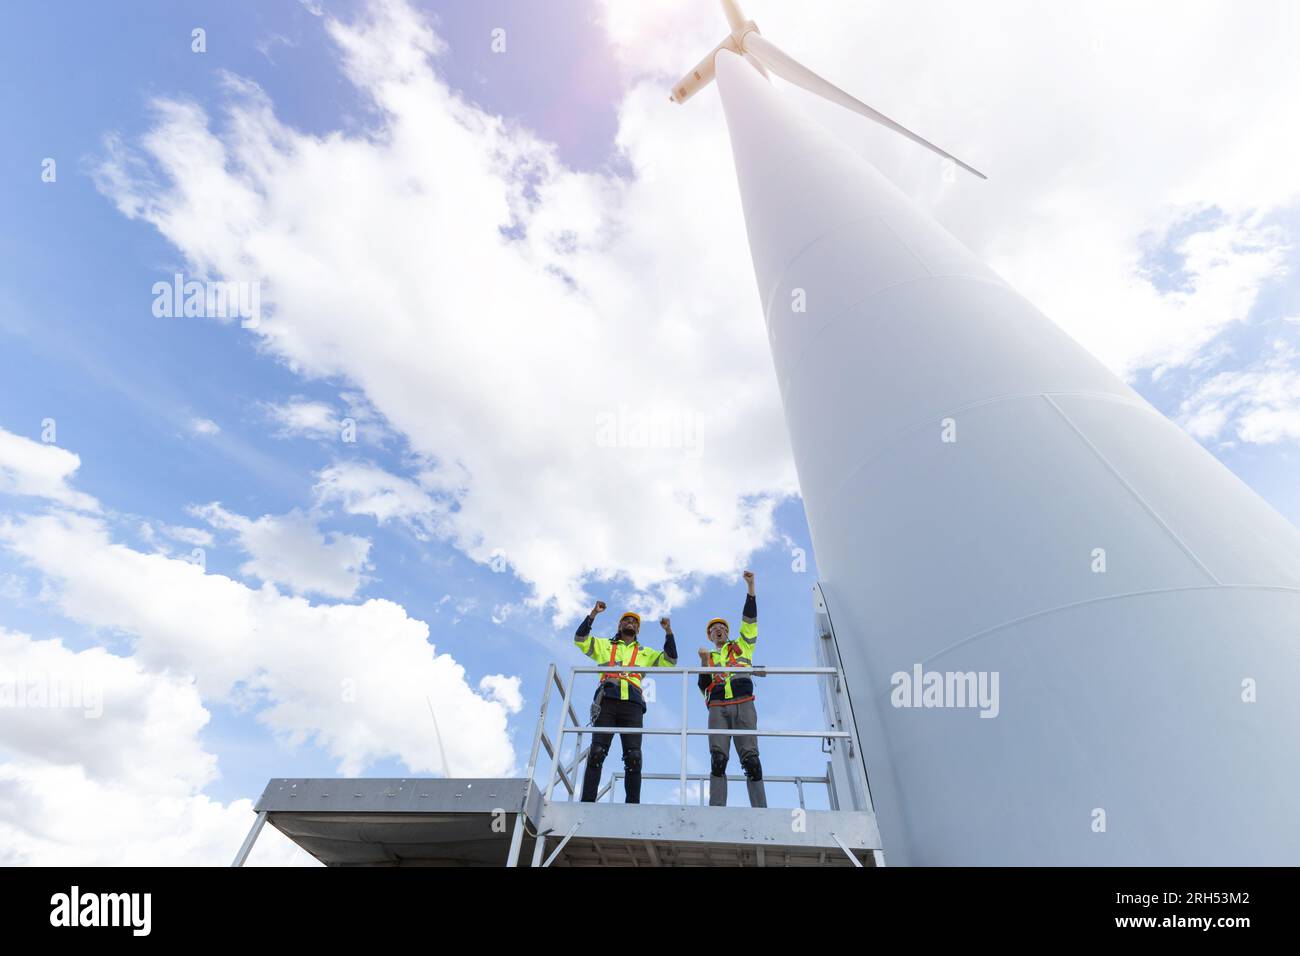 L'équipe d'ingénieurs de succès gladfull a levé les mains après avoir fini le service de travail construire une nouvelle infrastructure d'énergie propre d'énergie écologique d'éolienne Banque D'Images